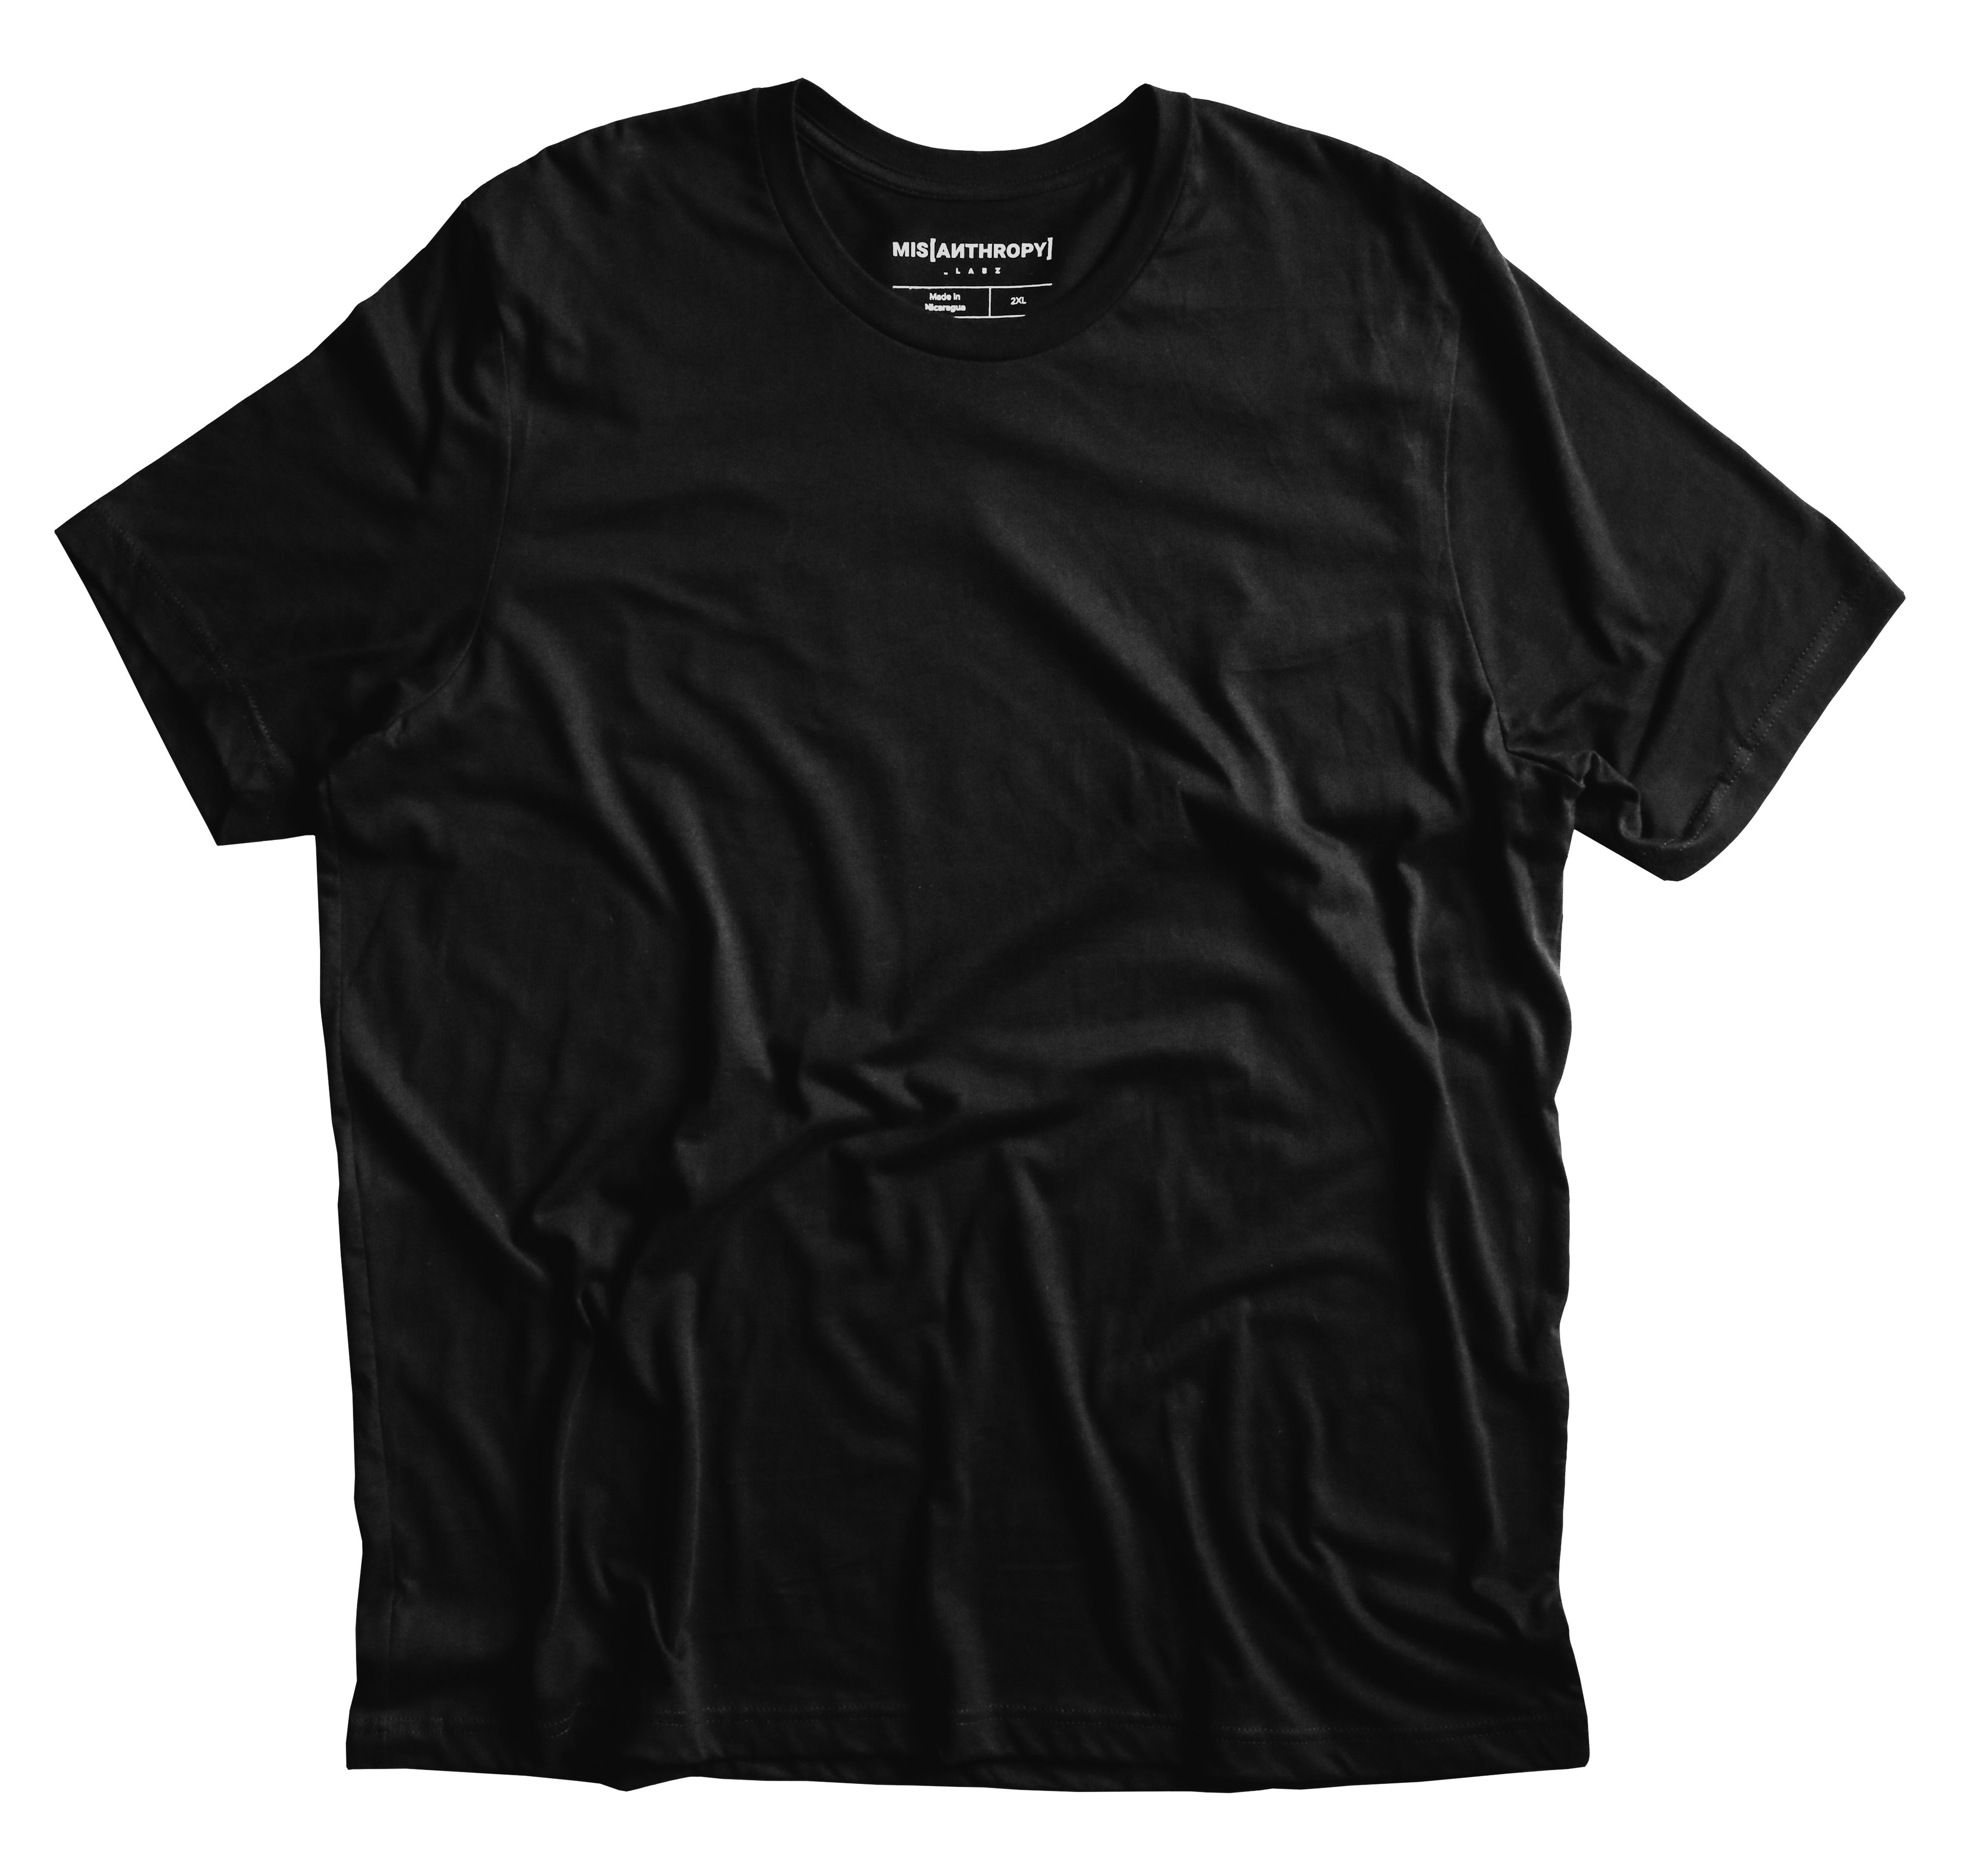 Spiral Curse Type T-Shirt